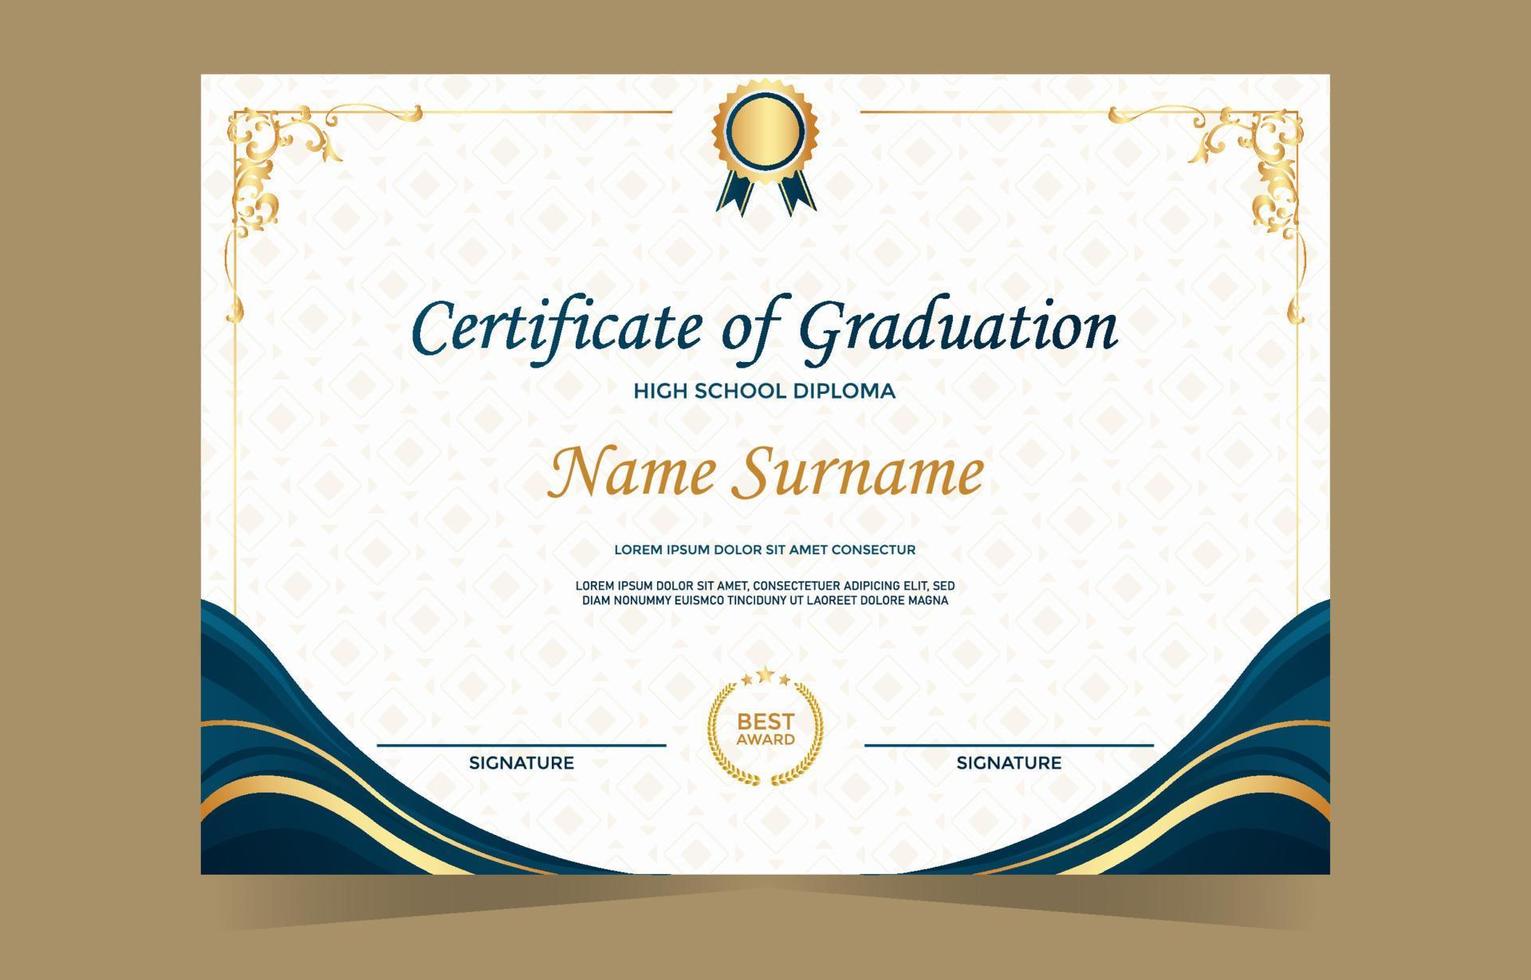 certificado de plantilla de graduación vector